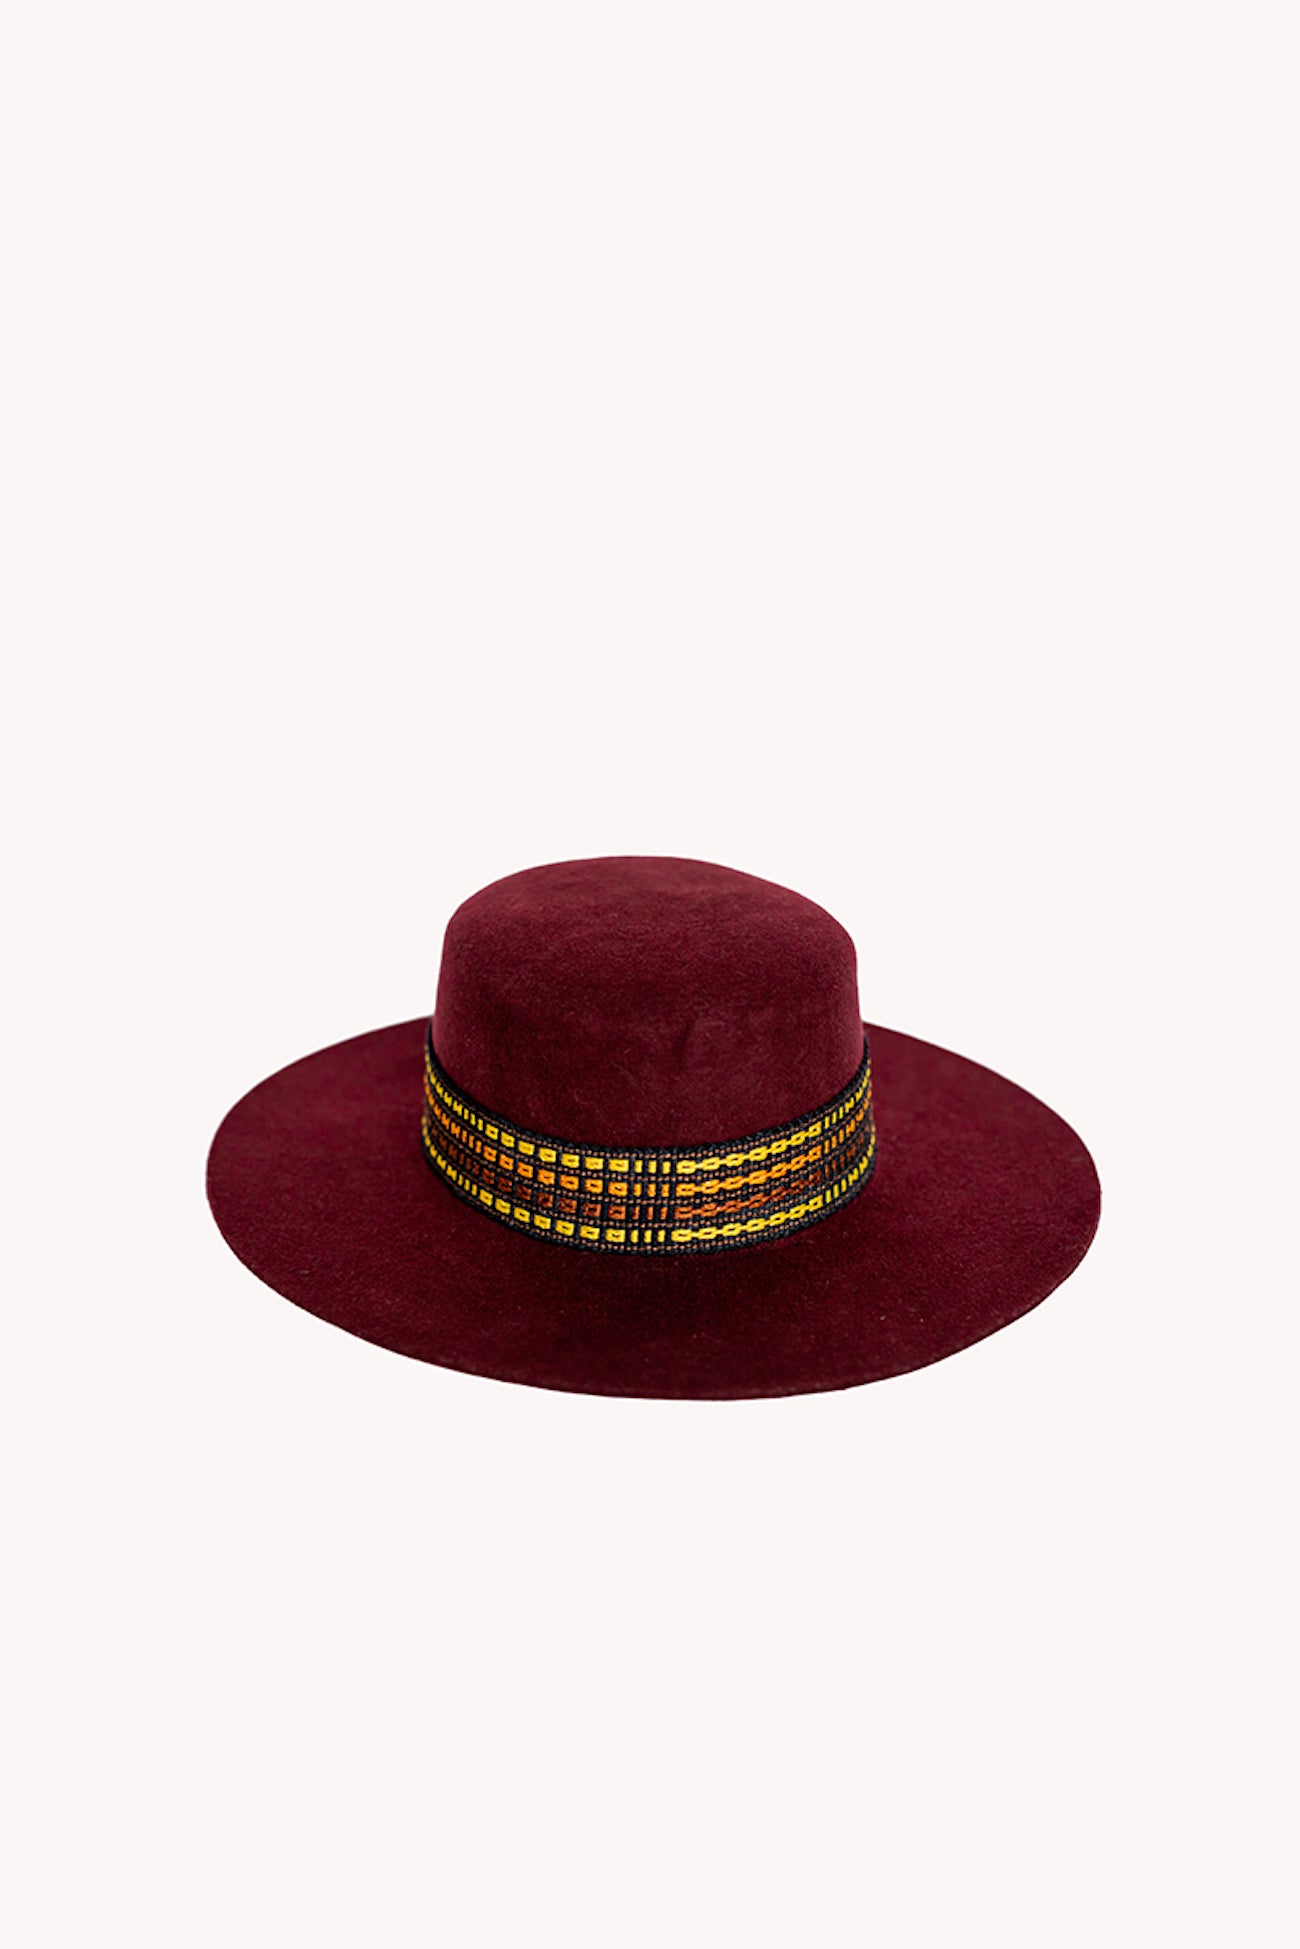 Red Spanish style peruvian hat